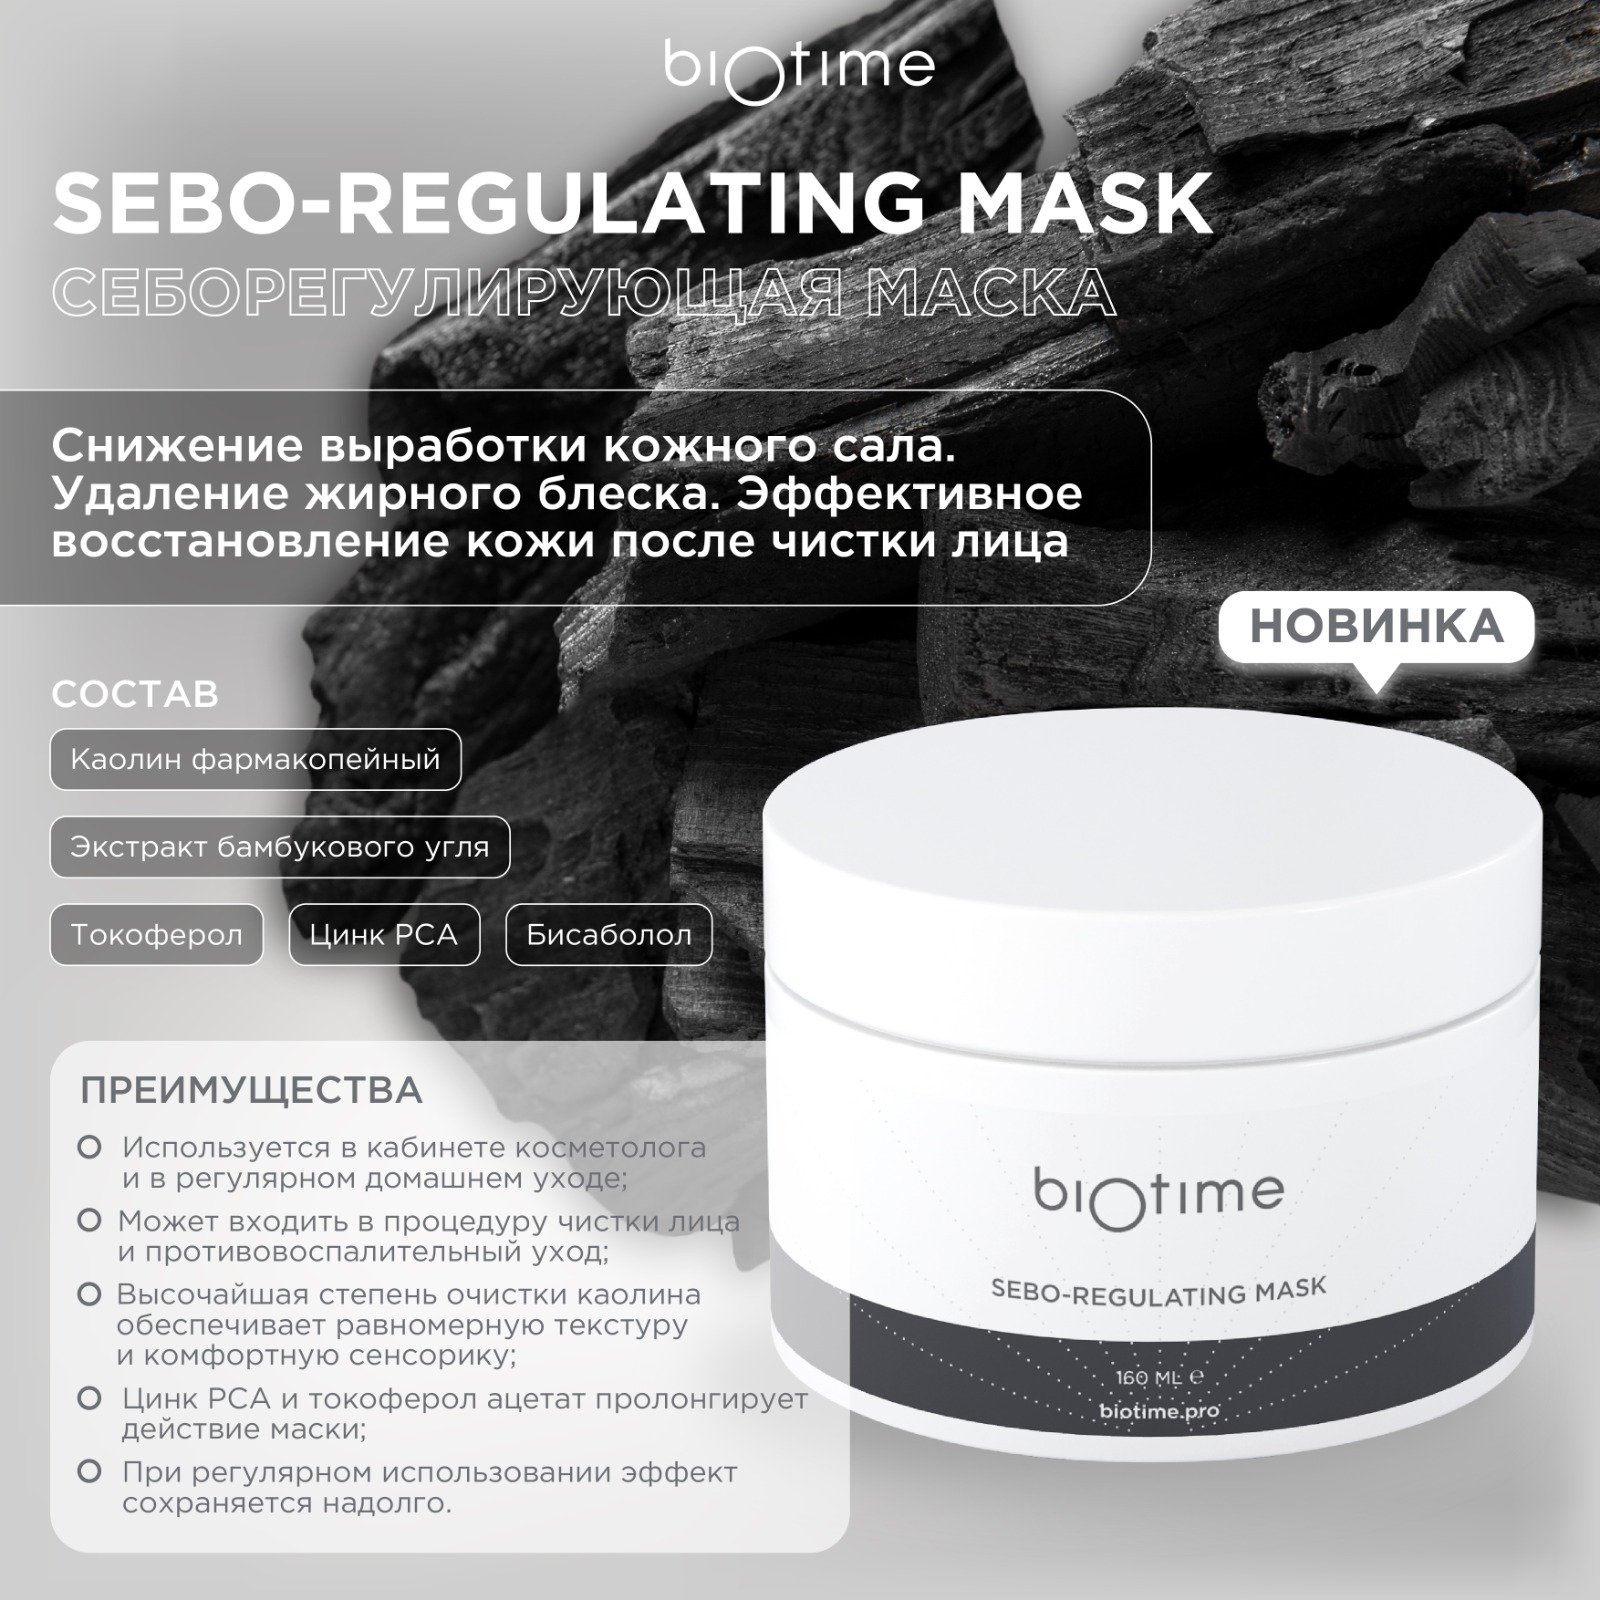 Маска Biotime Sebo-Regulating Mask Себорегулирующая 160 мл удивительные люди икс одарённые роман